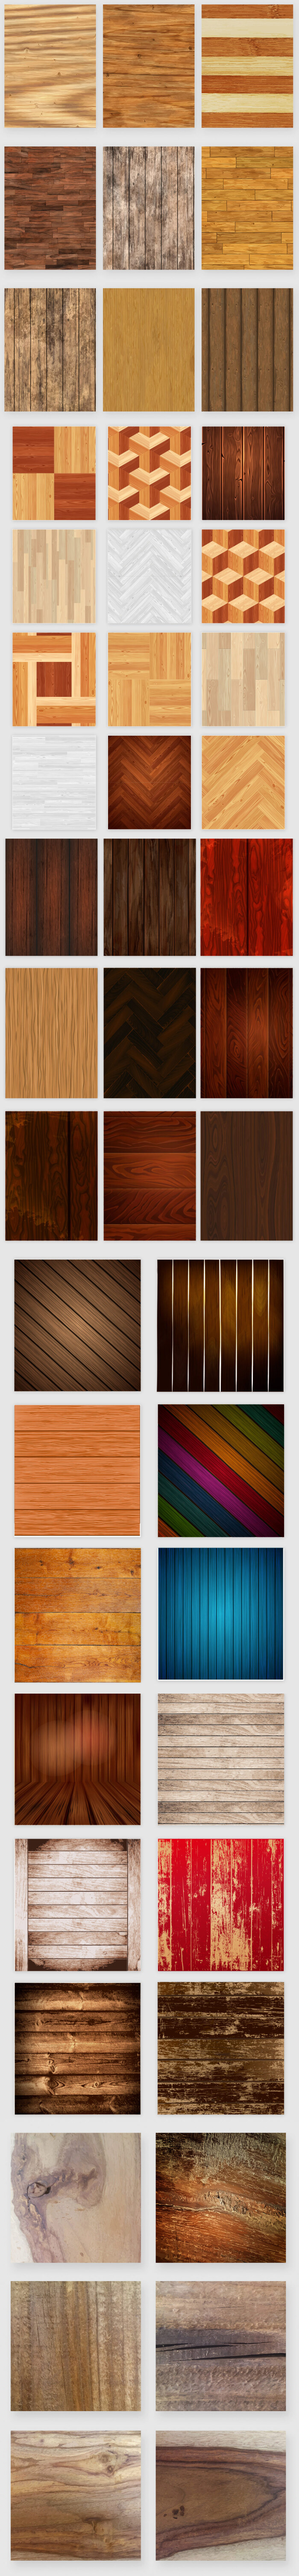 高清木质纹理复古木地板c4d木纹贴图材质木纹ai矢量背景大图s071